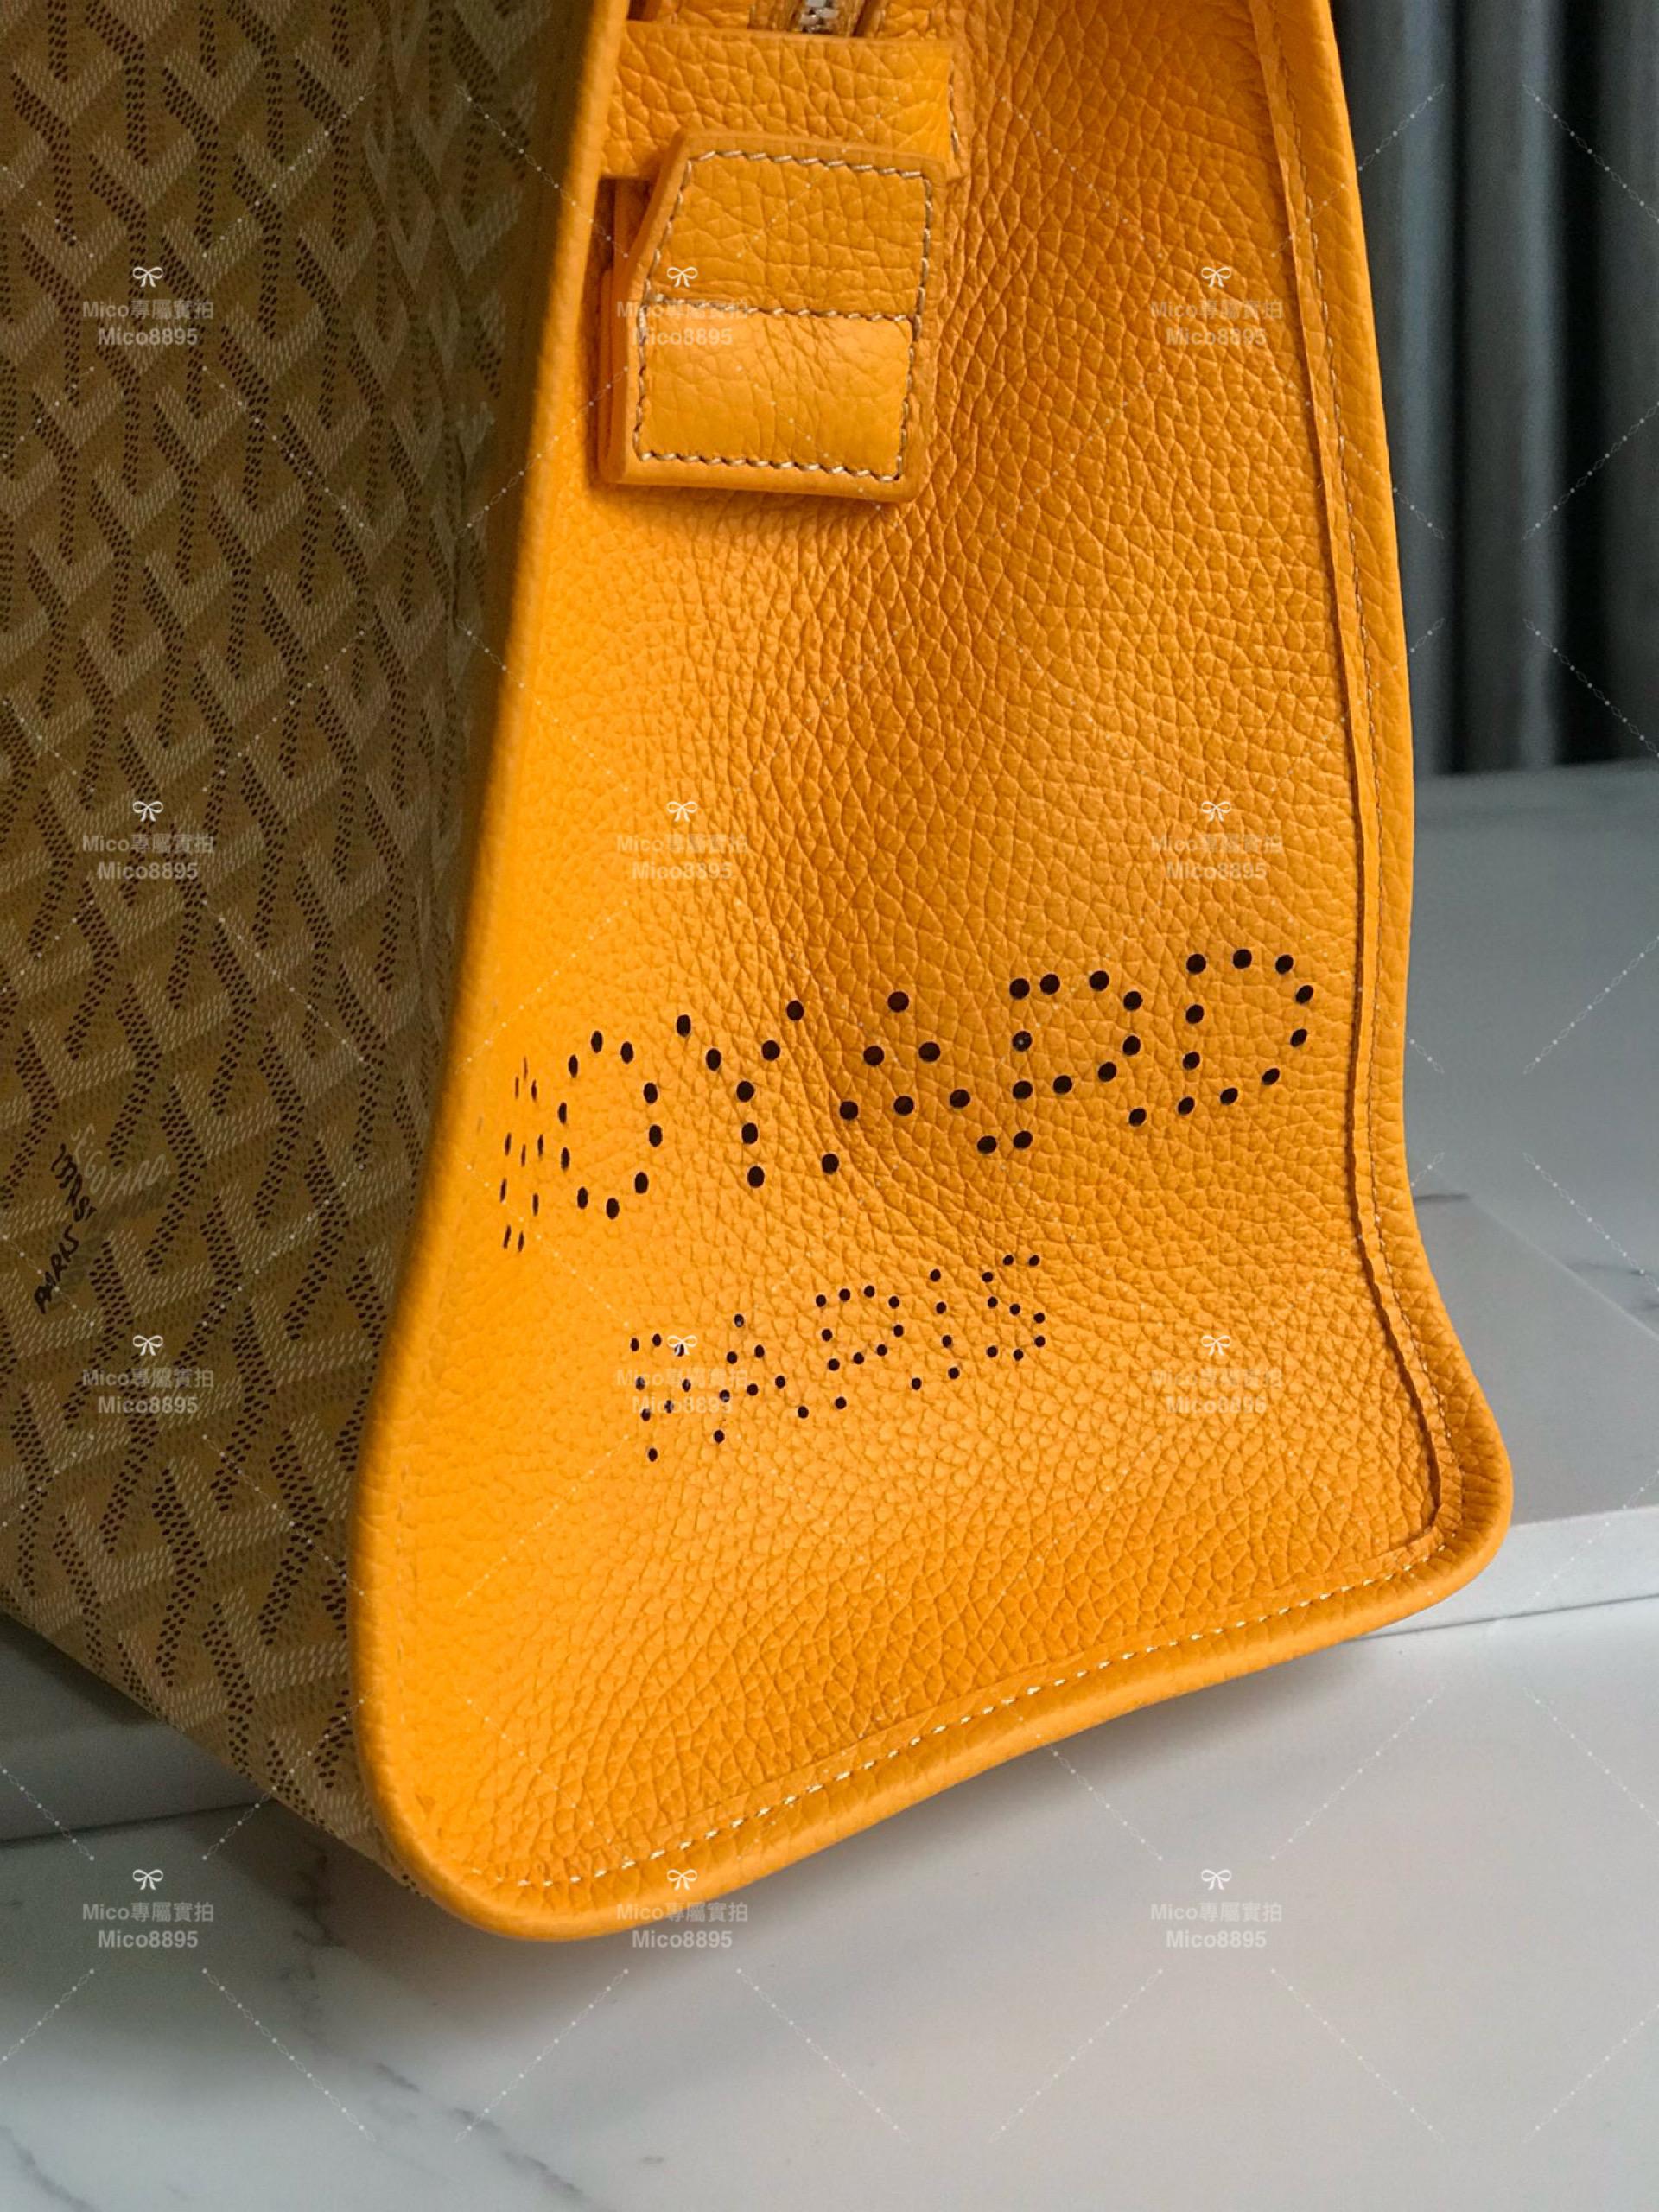 Goyard 黃色 hardy bag 購物袋/旅行包/寵物包